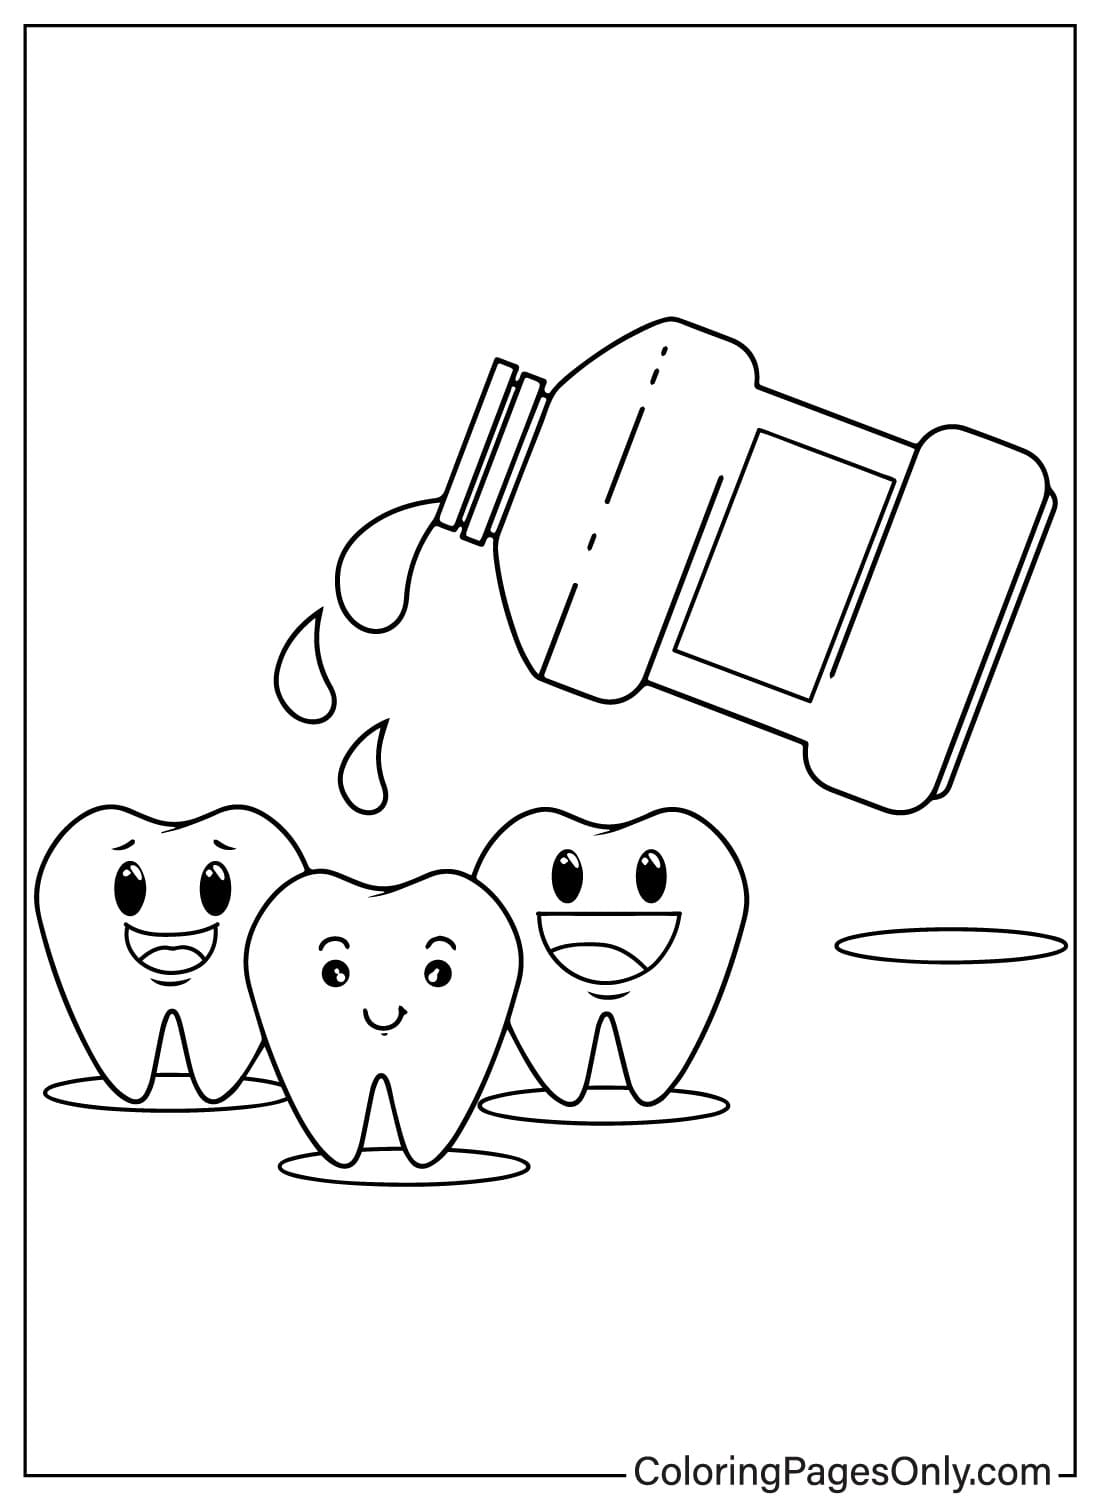 Página para colorir de fotos de dentes